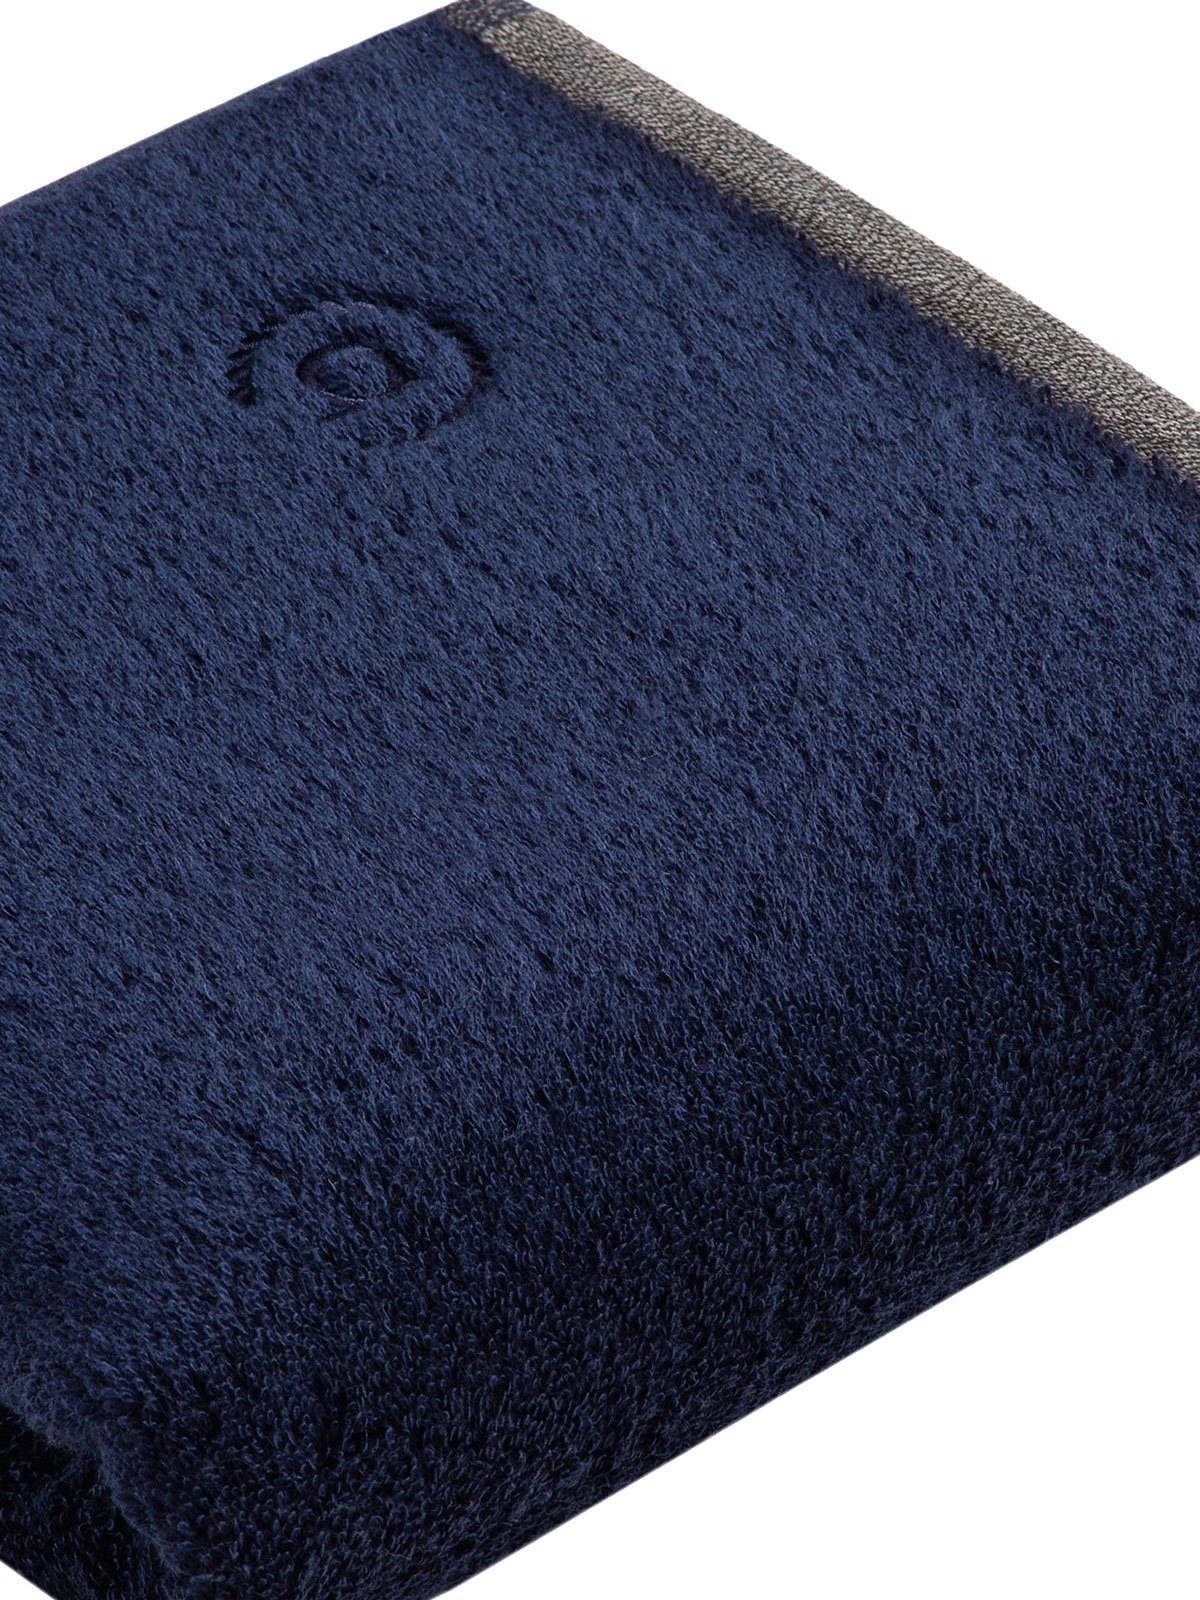 (Stück, hohe Handtücher Prato, bugatti Collection 1-St), Markenqualität blau marine Frottier Handtücher